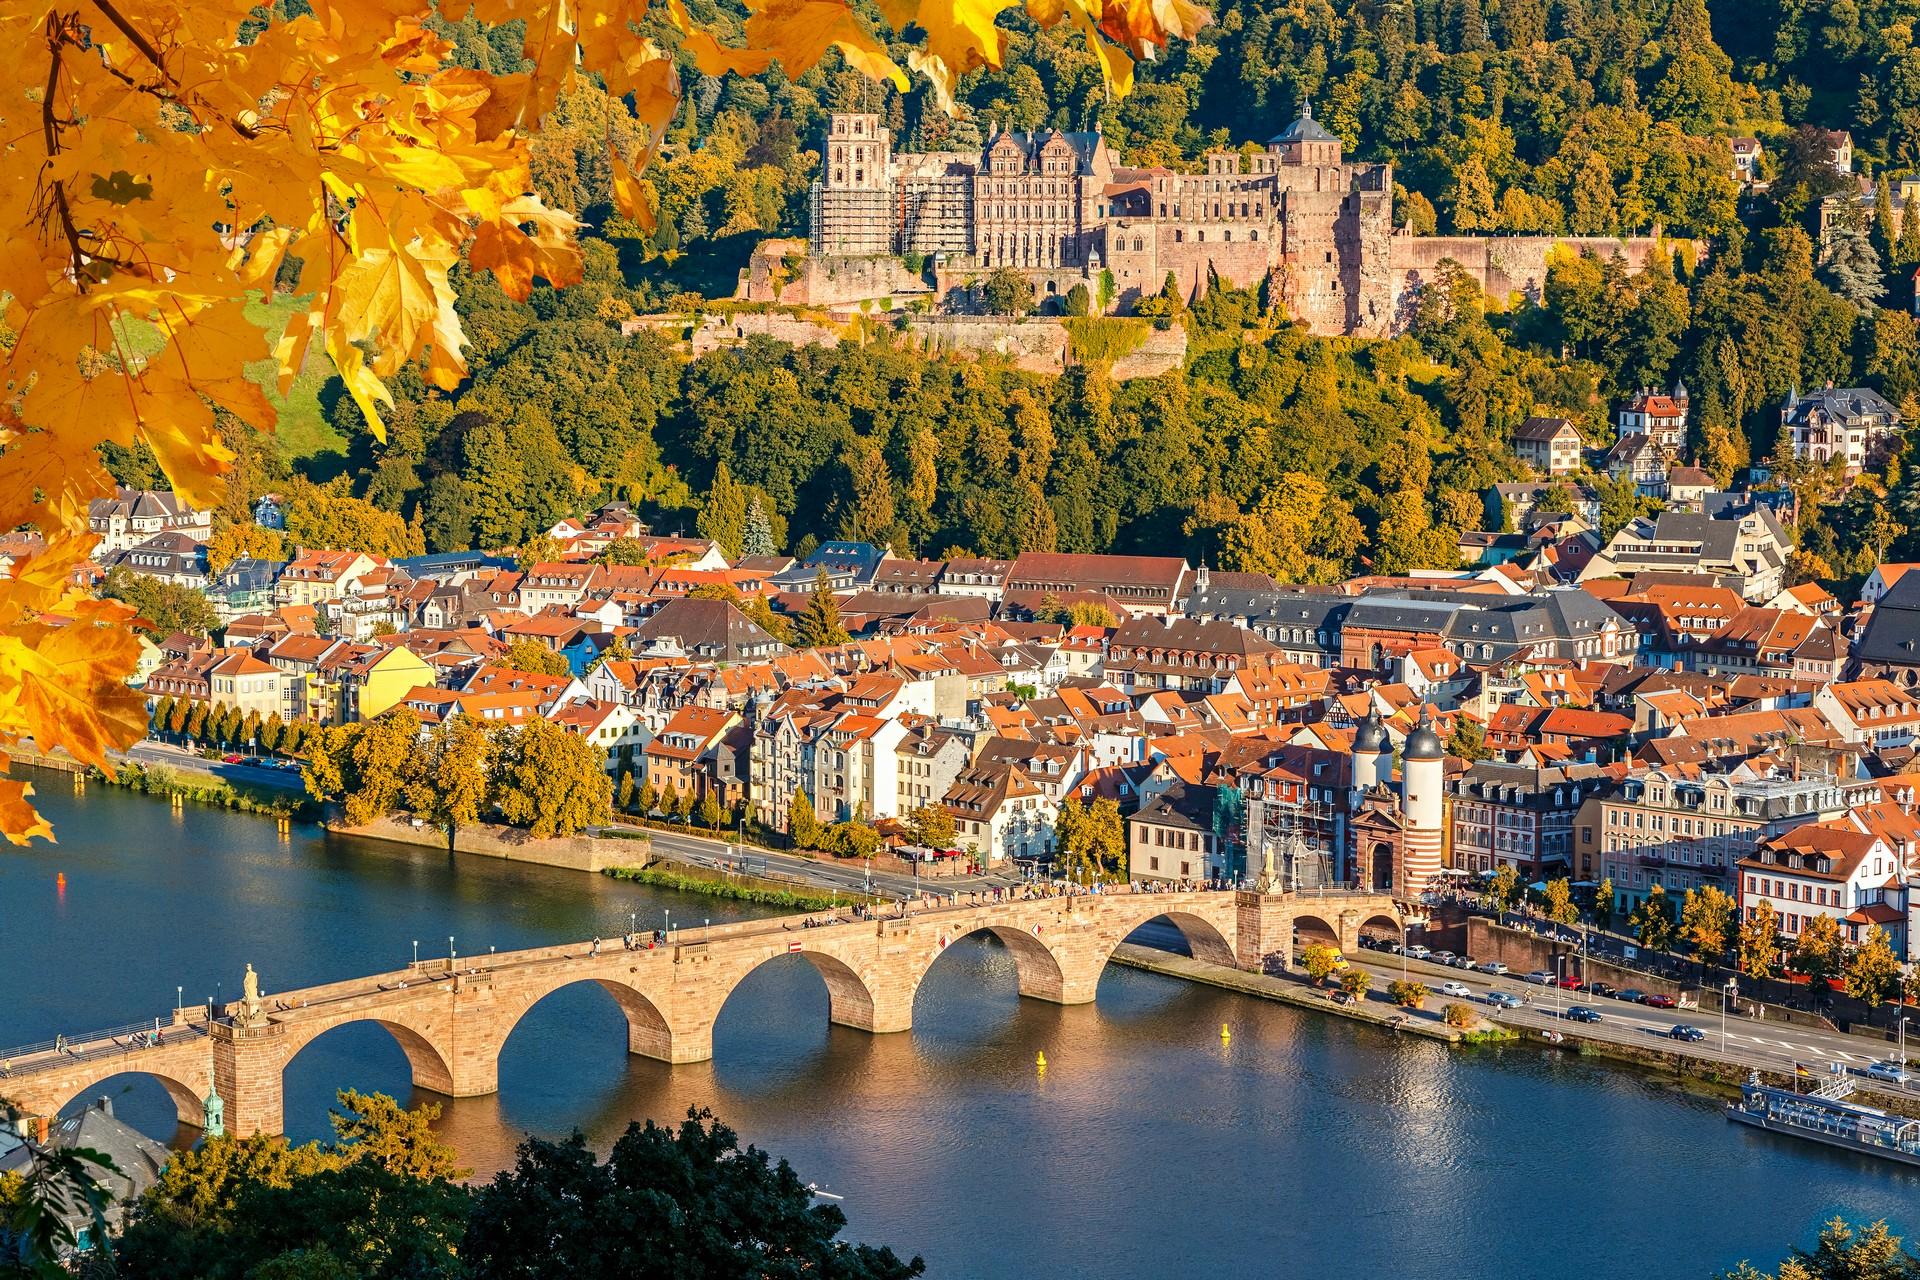 Aerial view of bridge in Heidelberg